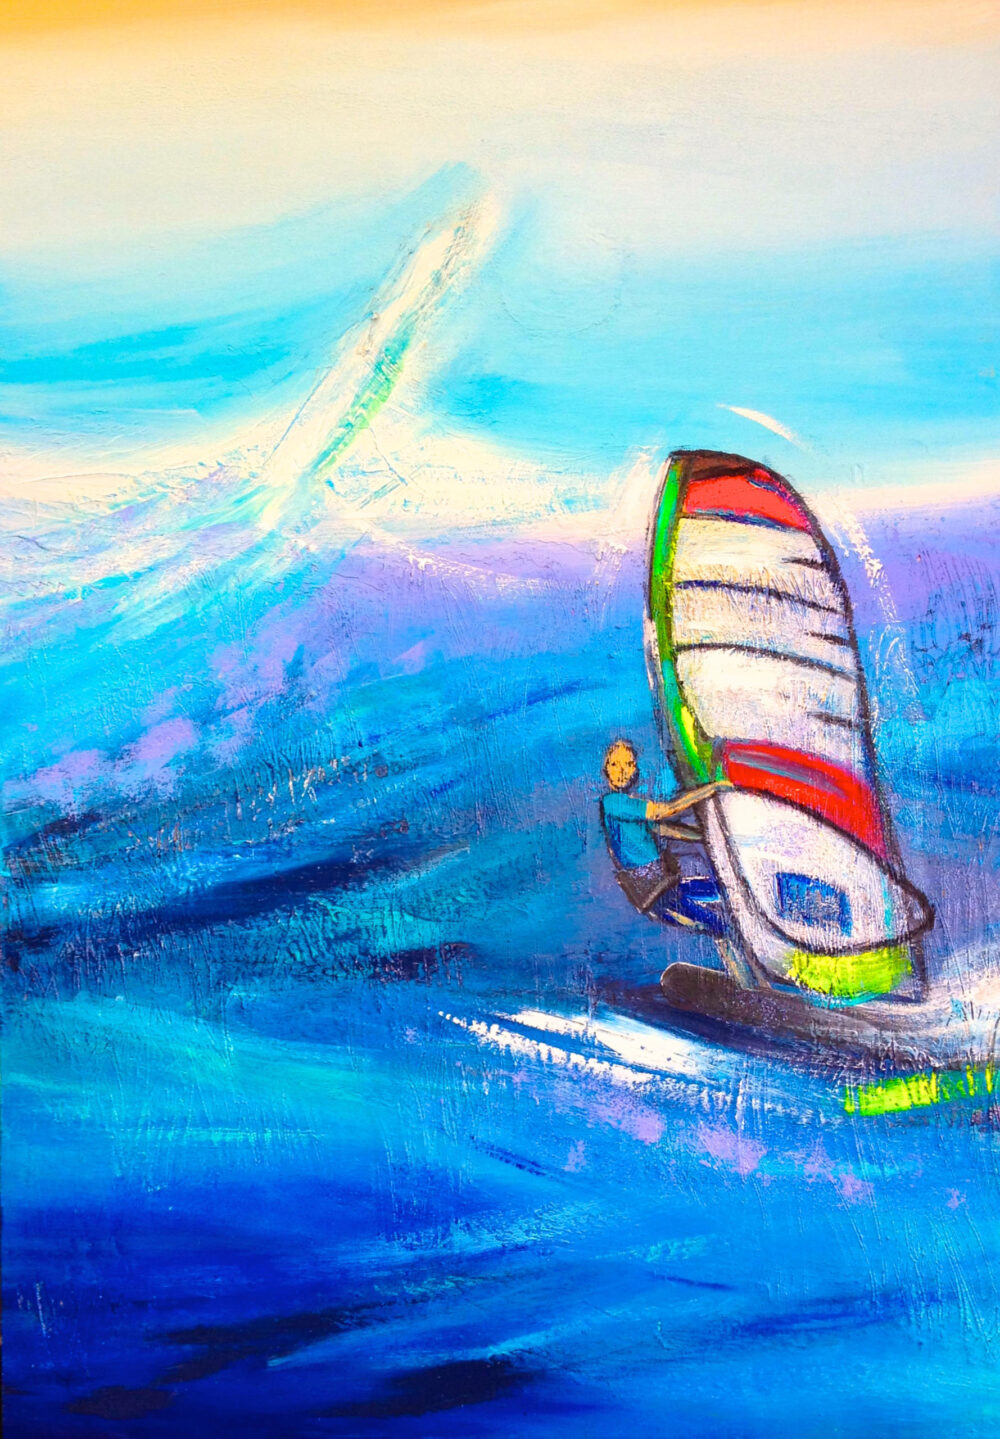 Das Gemälde Surfing zeigt einen Surfer in den Meereswellen vor blauem Himmel